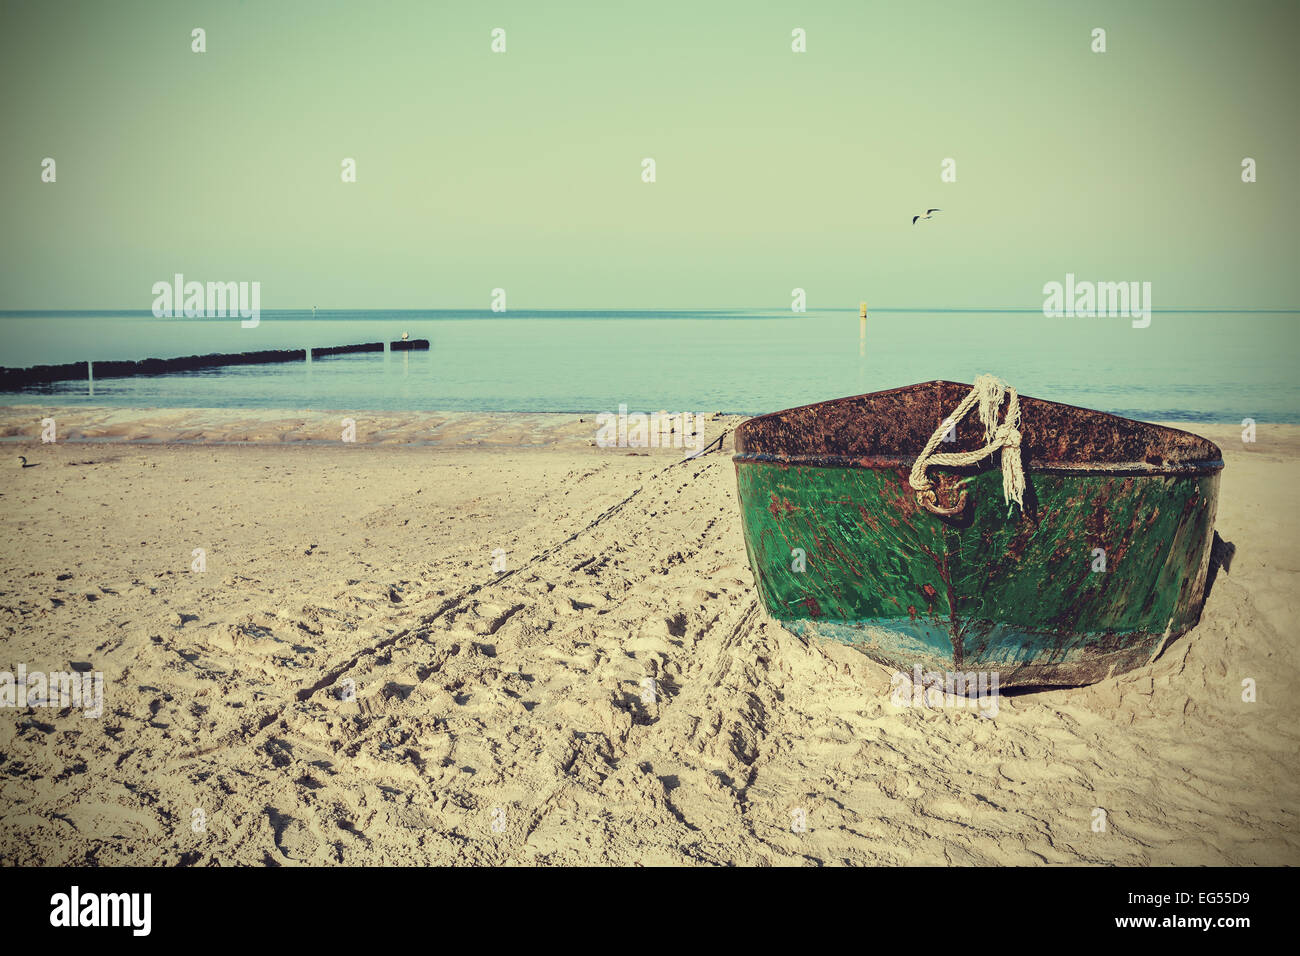 Retro-gefilterte Bild von einem alten rostigen Stahl Boot am Strand. Stockfoto